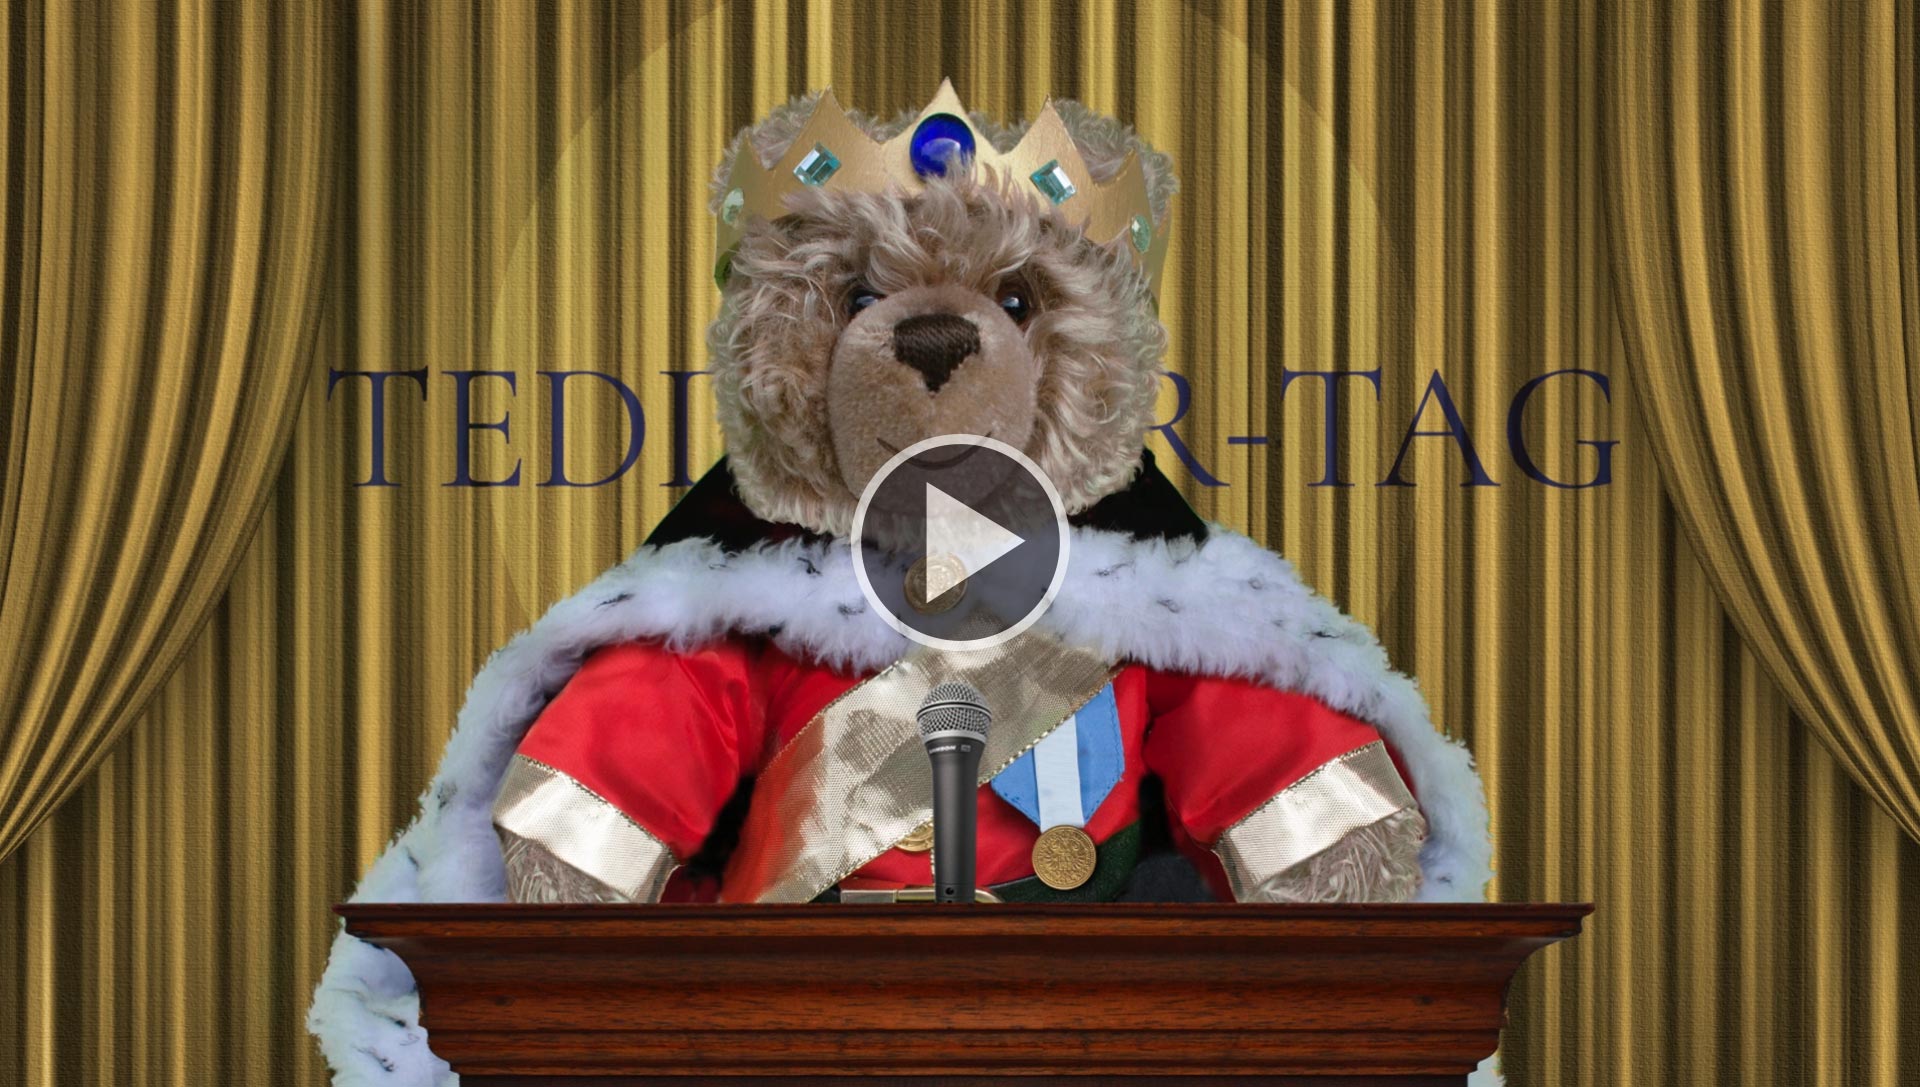 Teddy-König Opa I. und der Teddybär-Tag